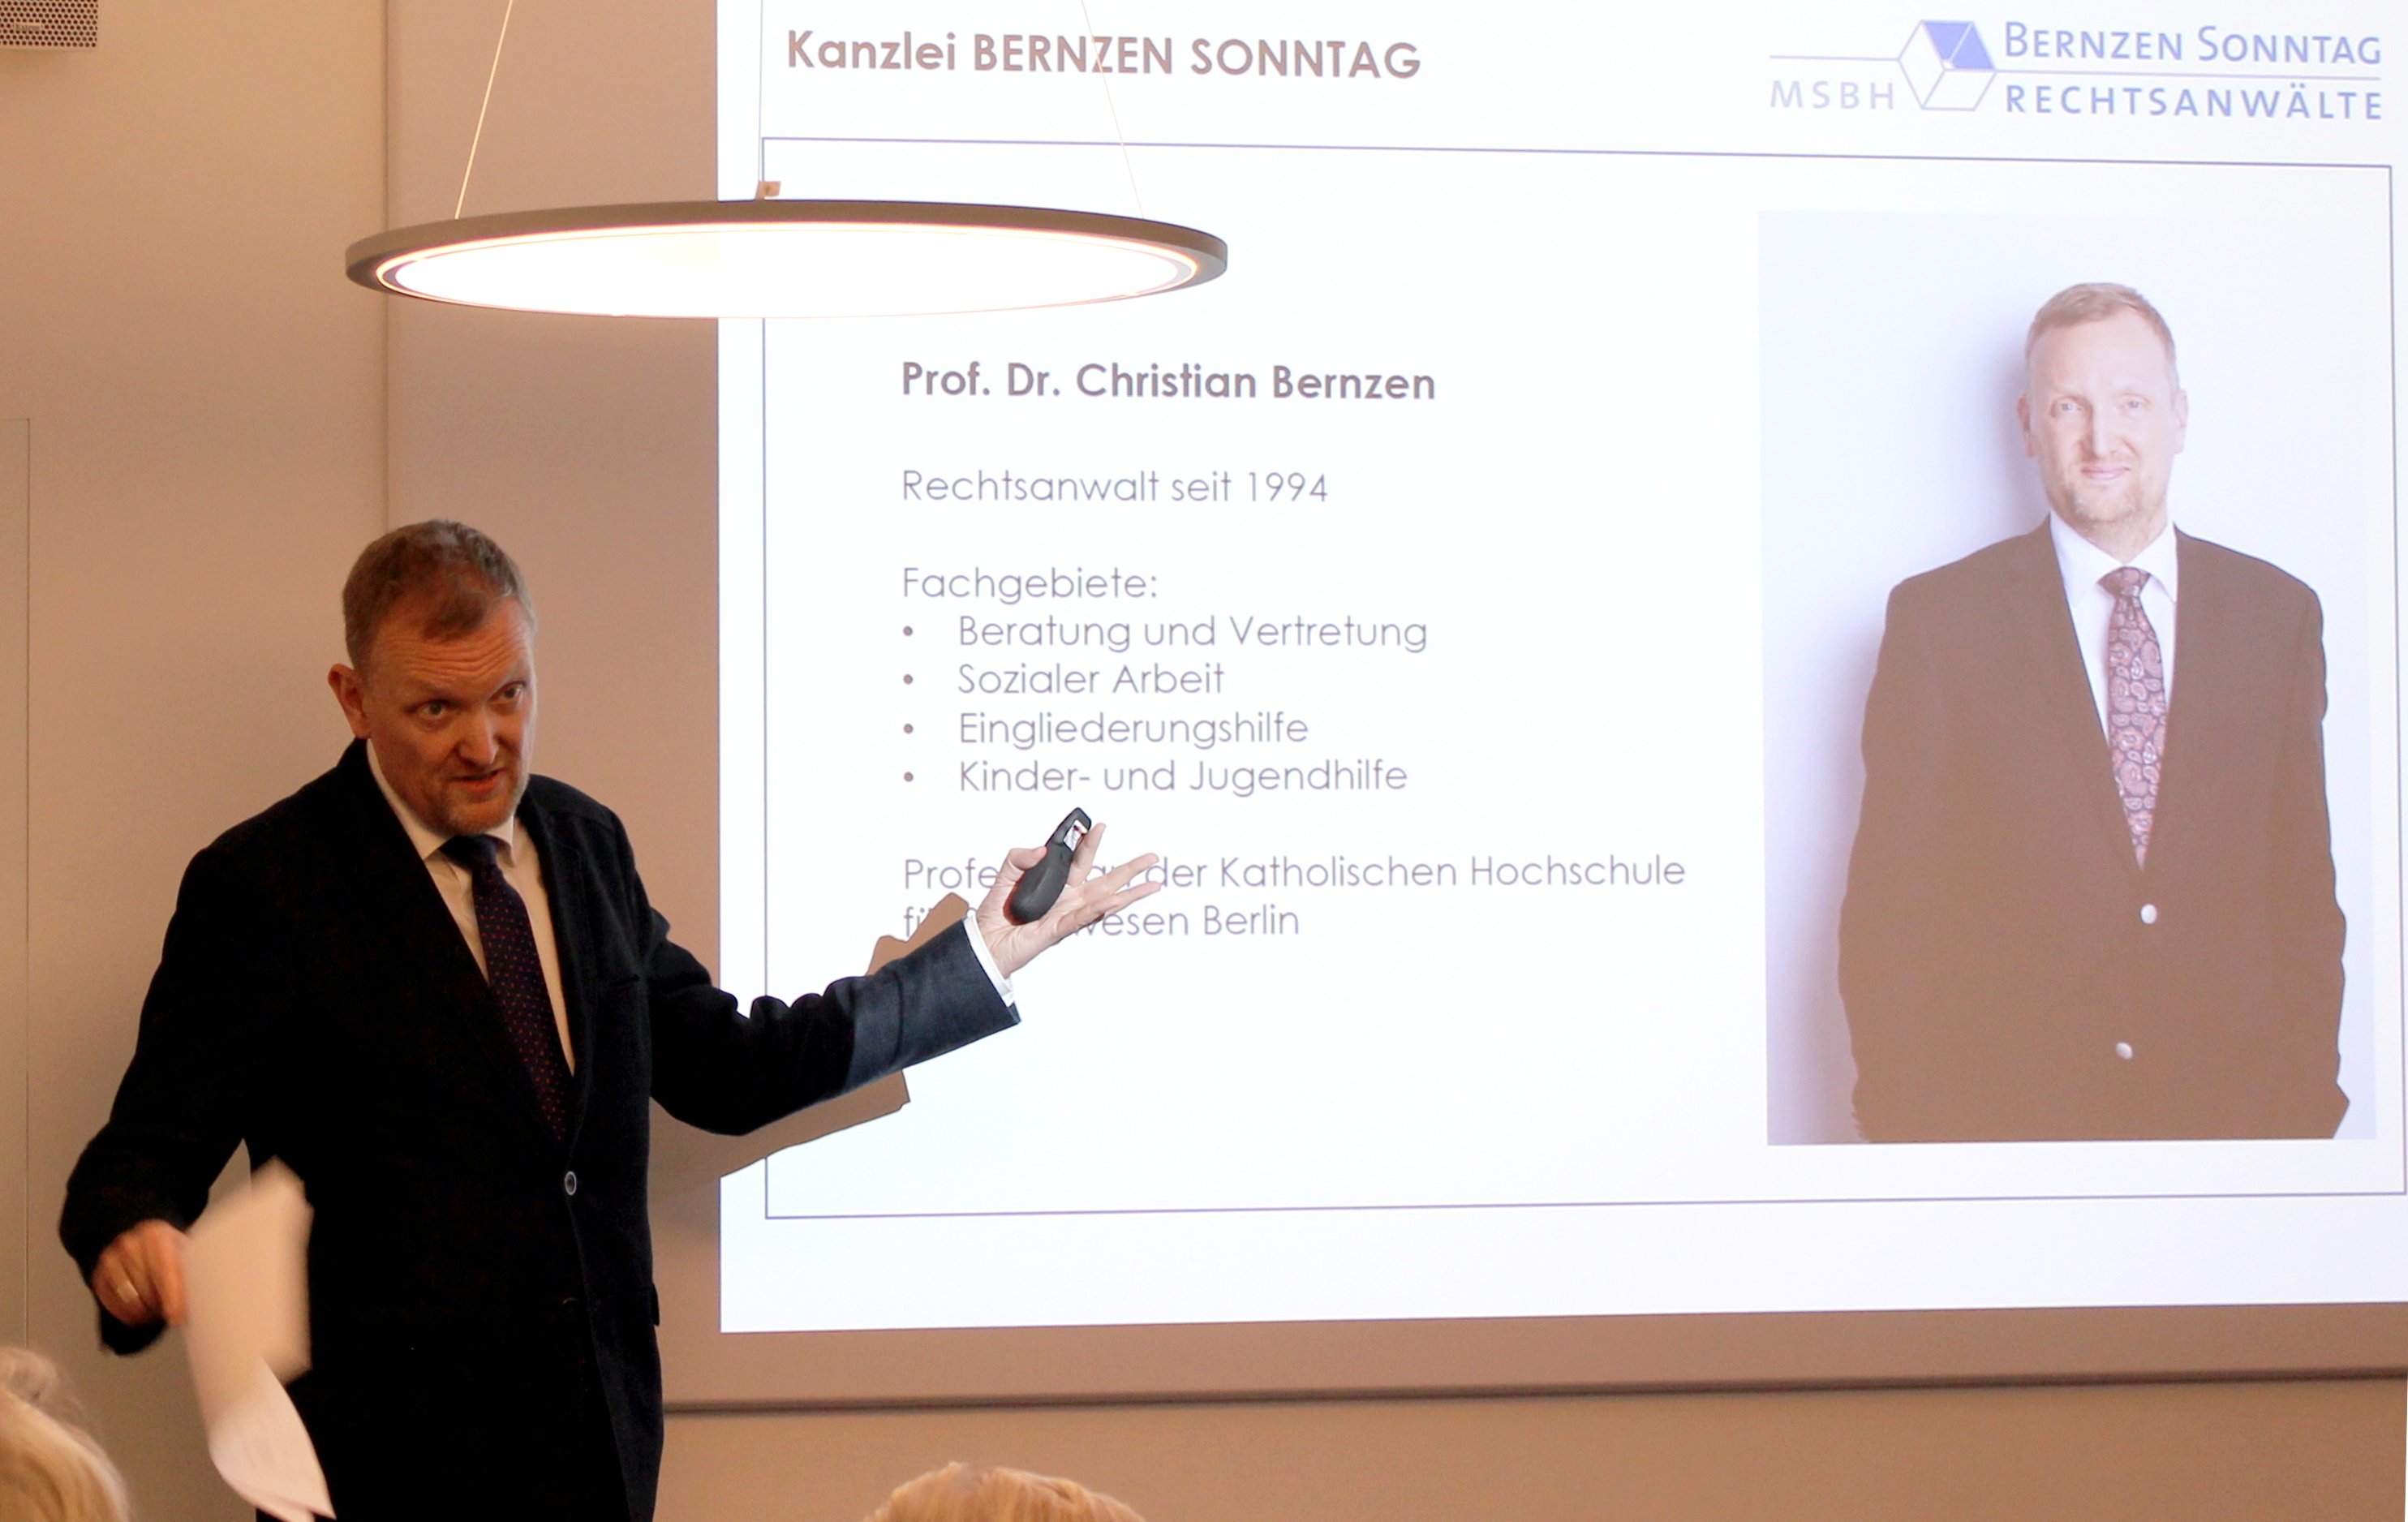 Prof. Dr. Bernzen hält einen Vortrag über das Bundesteilhabegesetz